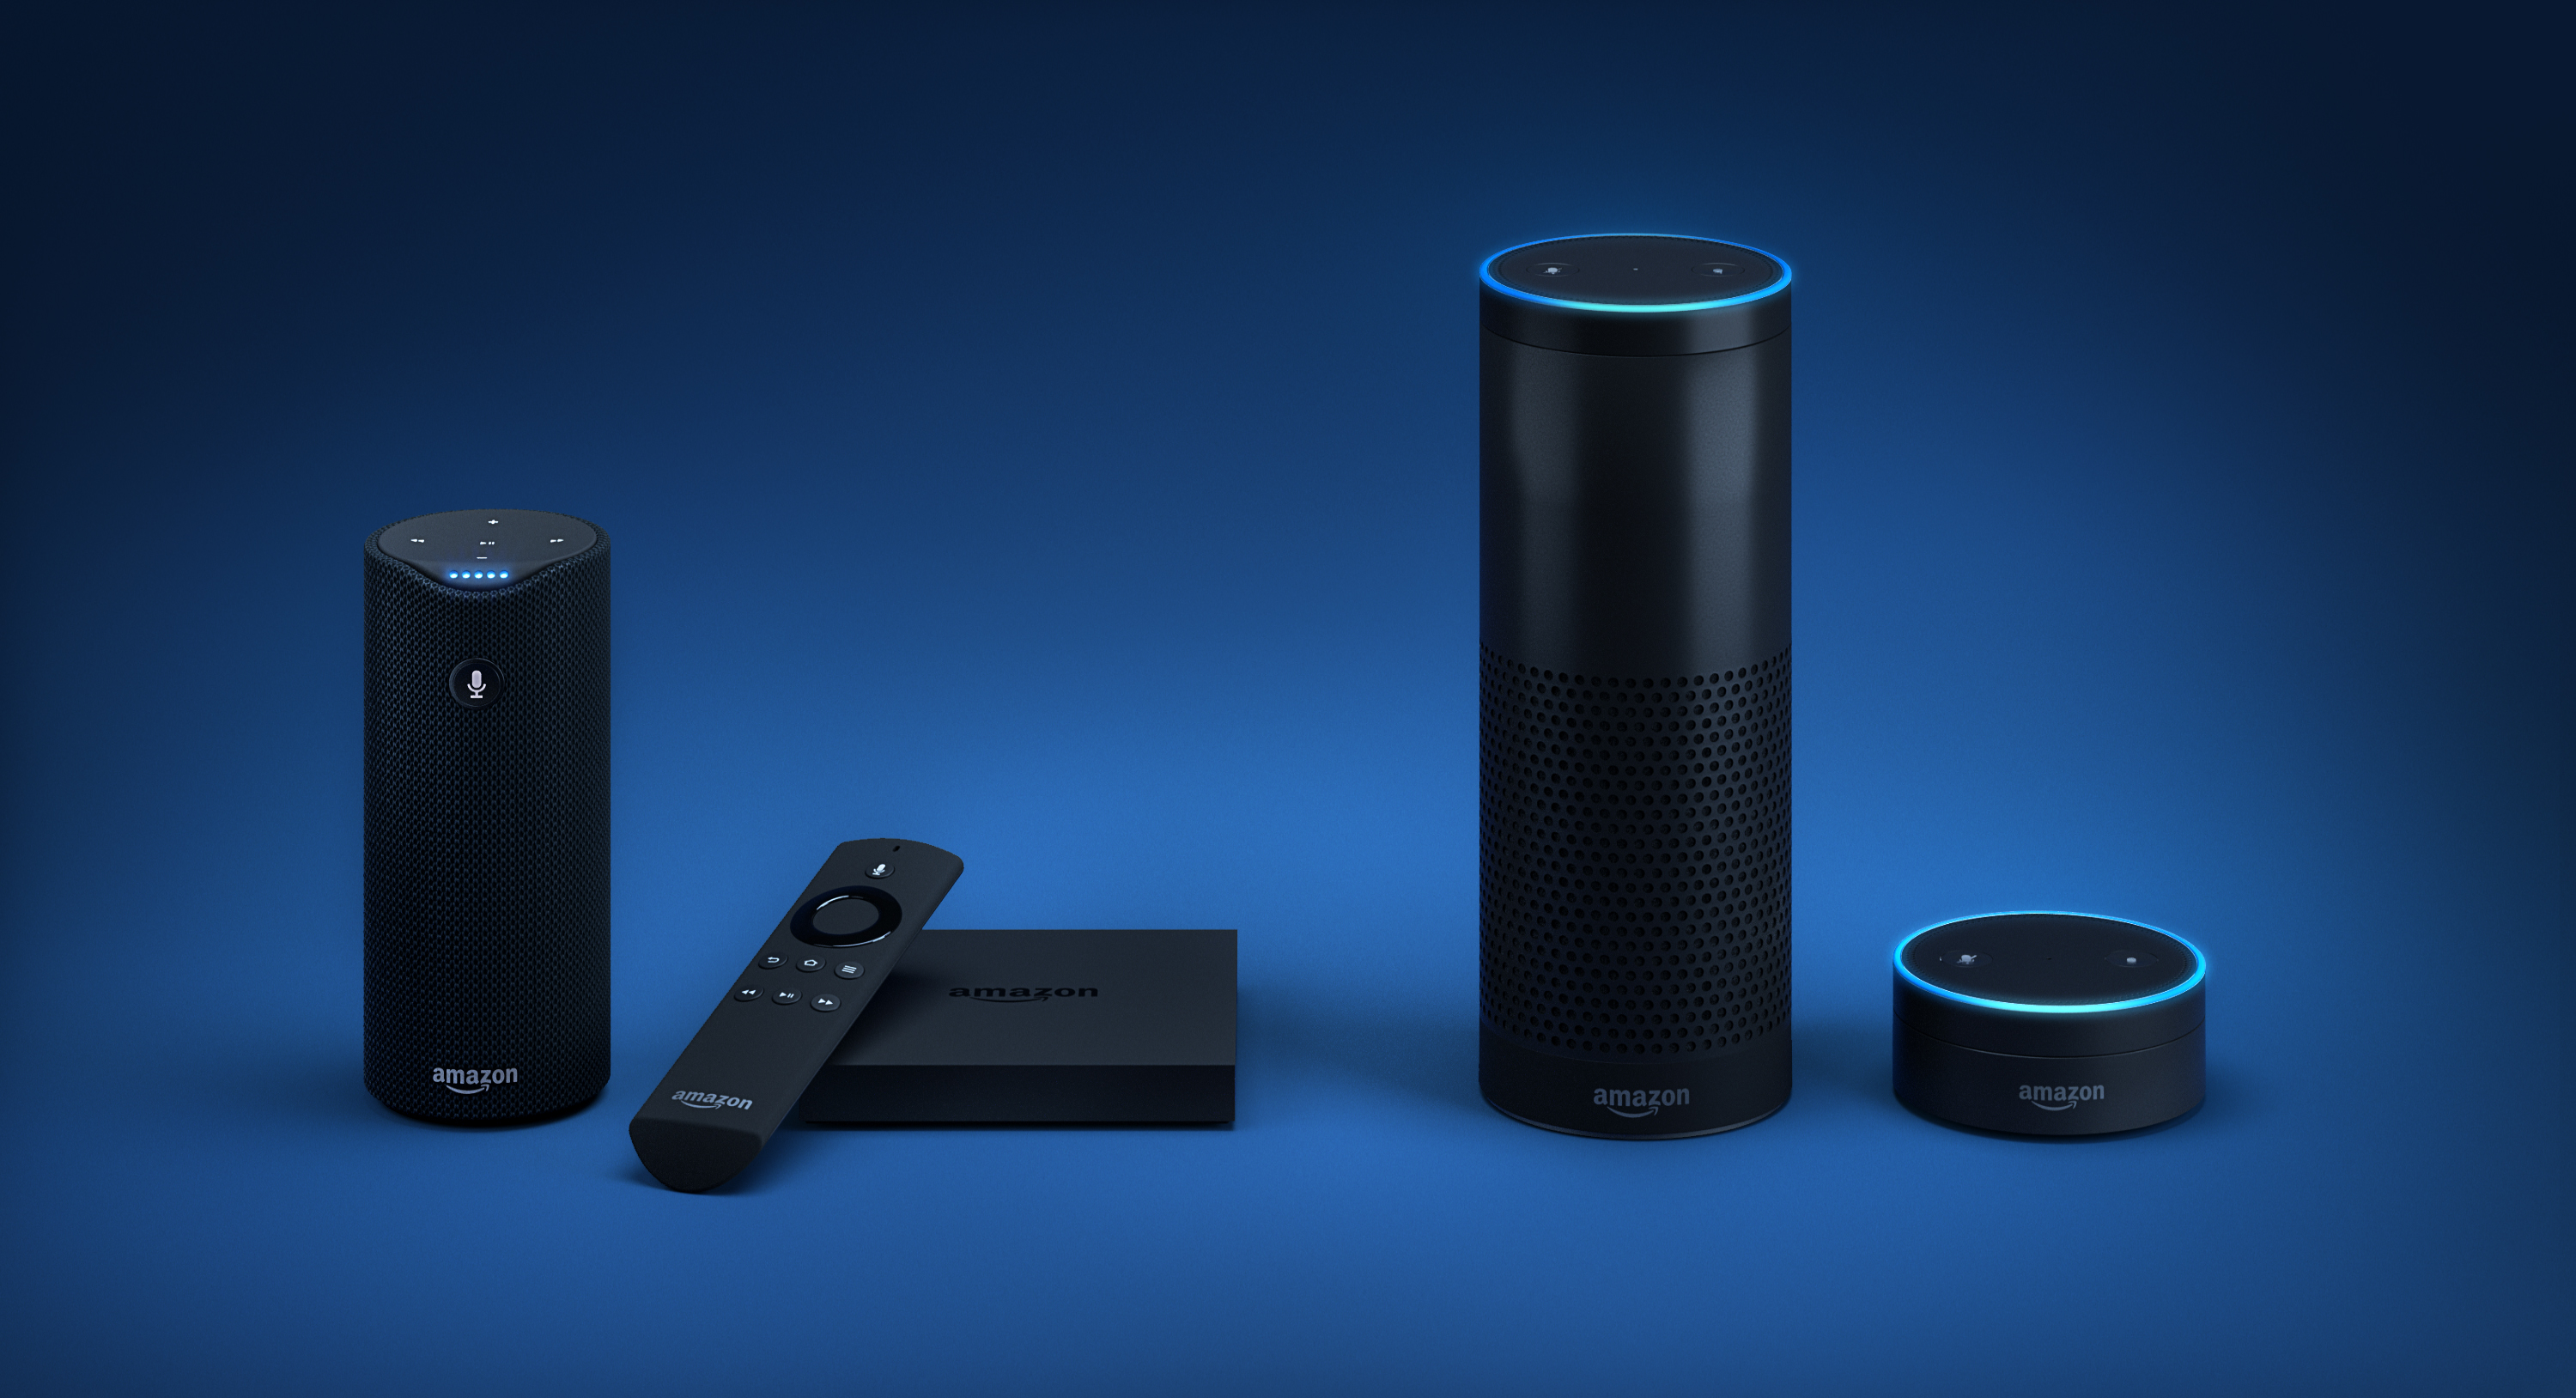 Sistema completo de Amazon Echo con control remoto